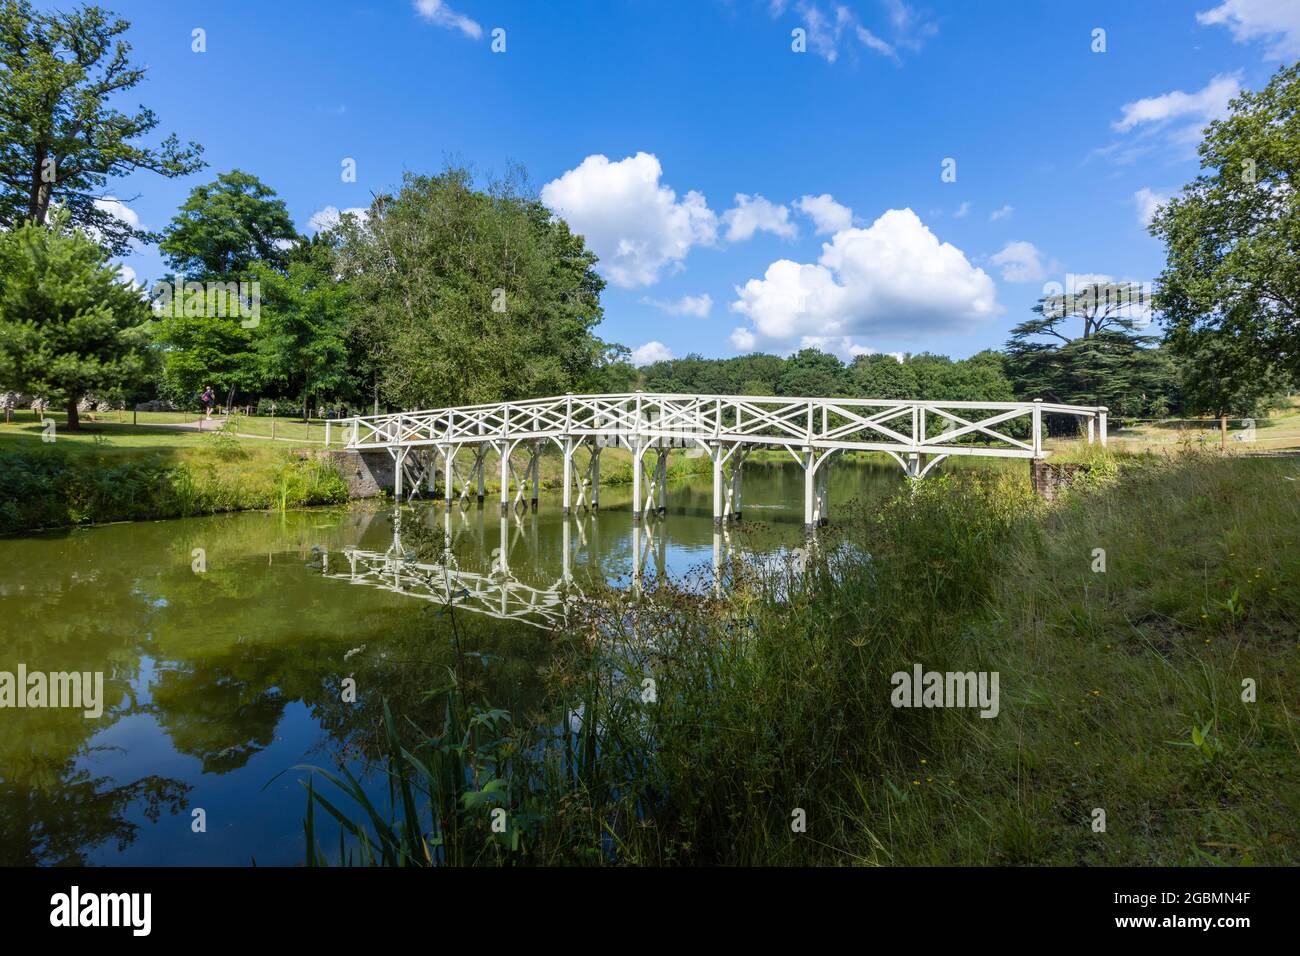 Ricostruito ponte cinese in legno bianco nel Hamilton Paesaggi di Paishill Park, giardini paesaggistici a Cobham, Surrey, Inghilterra sud-orientale, Regno Unito Foto Stock